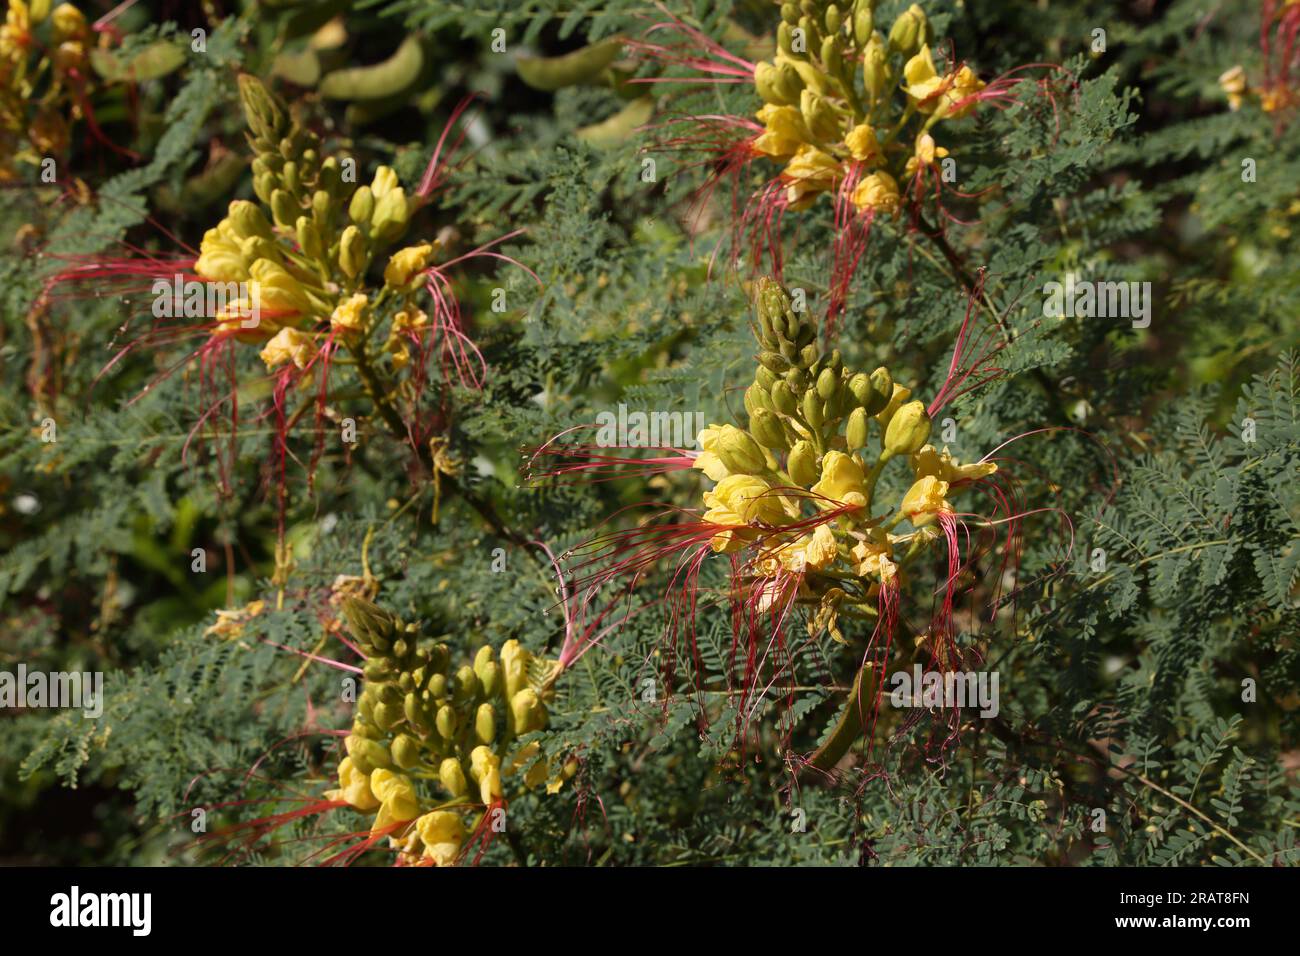 Vouliagmeni Attica Grecia uccello giallo del Paradiso (Caesalpinia Gilliesi) Arbusto con fiori gialli e lunghi stami rossi Foto Stock